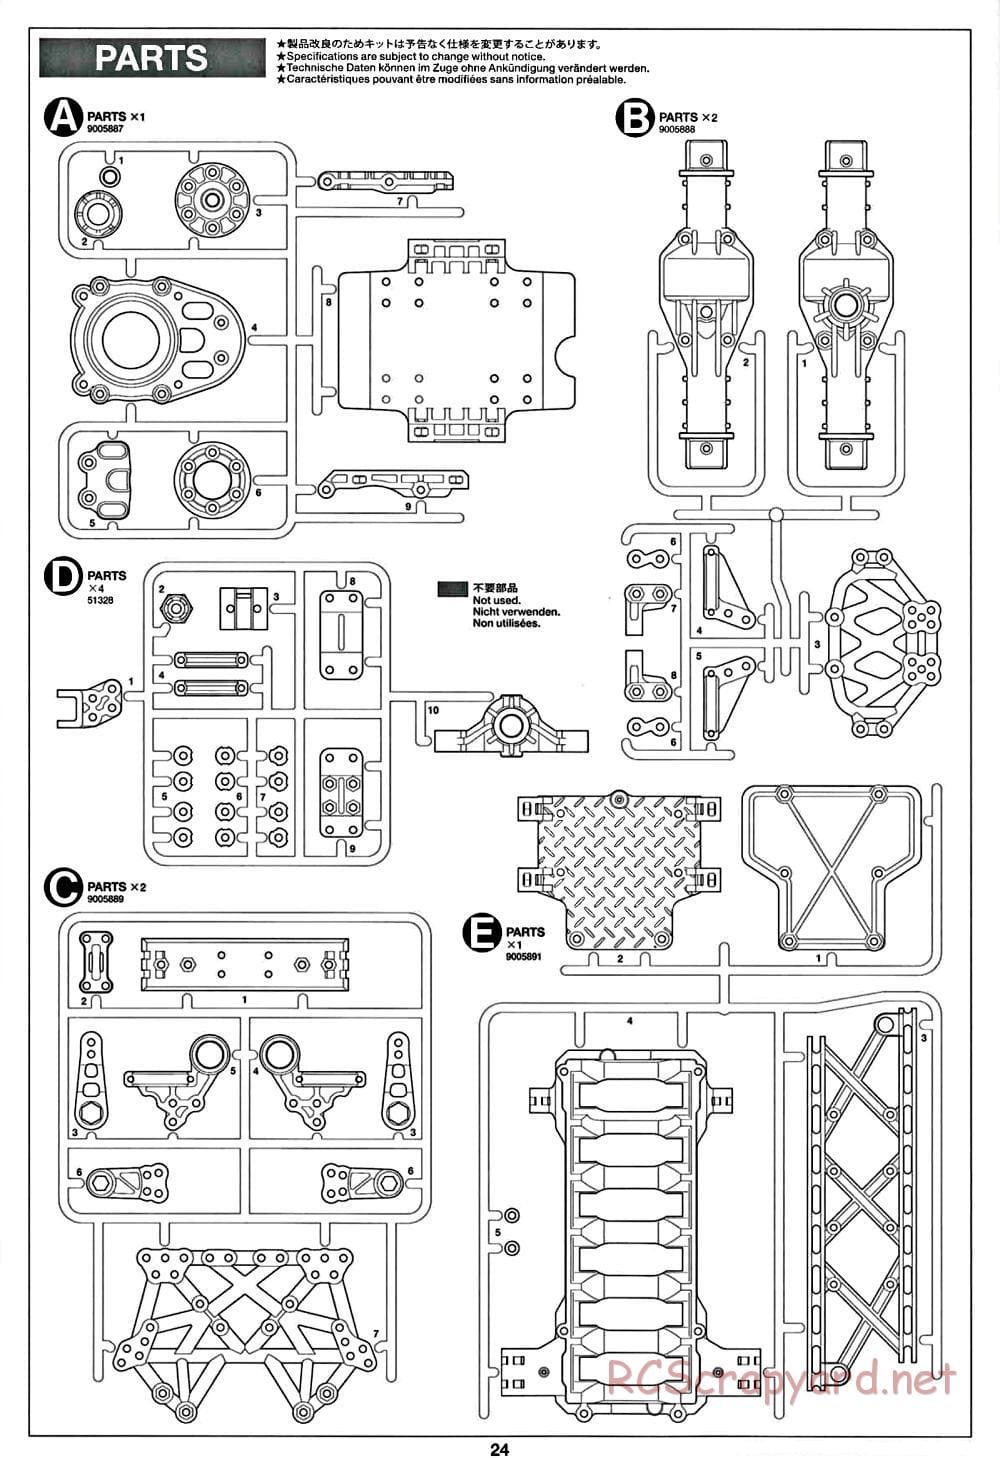 Tamiya - CR-01 Chassis - Manual - Page 24